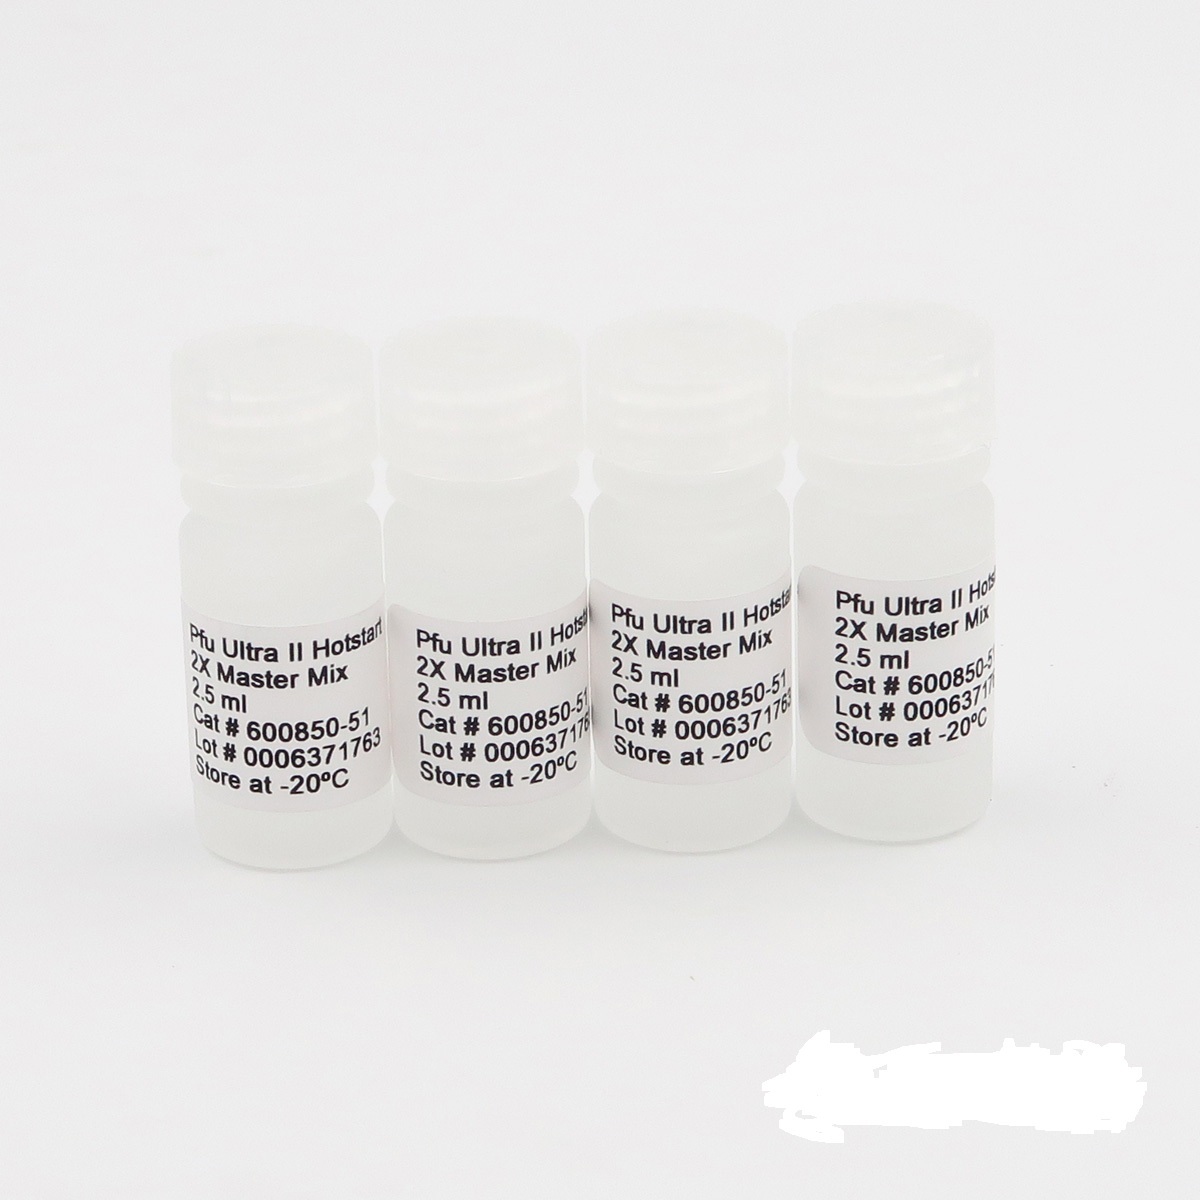 传染性软疣病毒染料法荧光定量PCR试剂盒